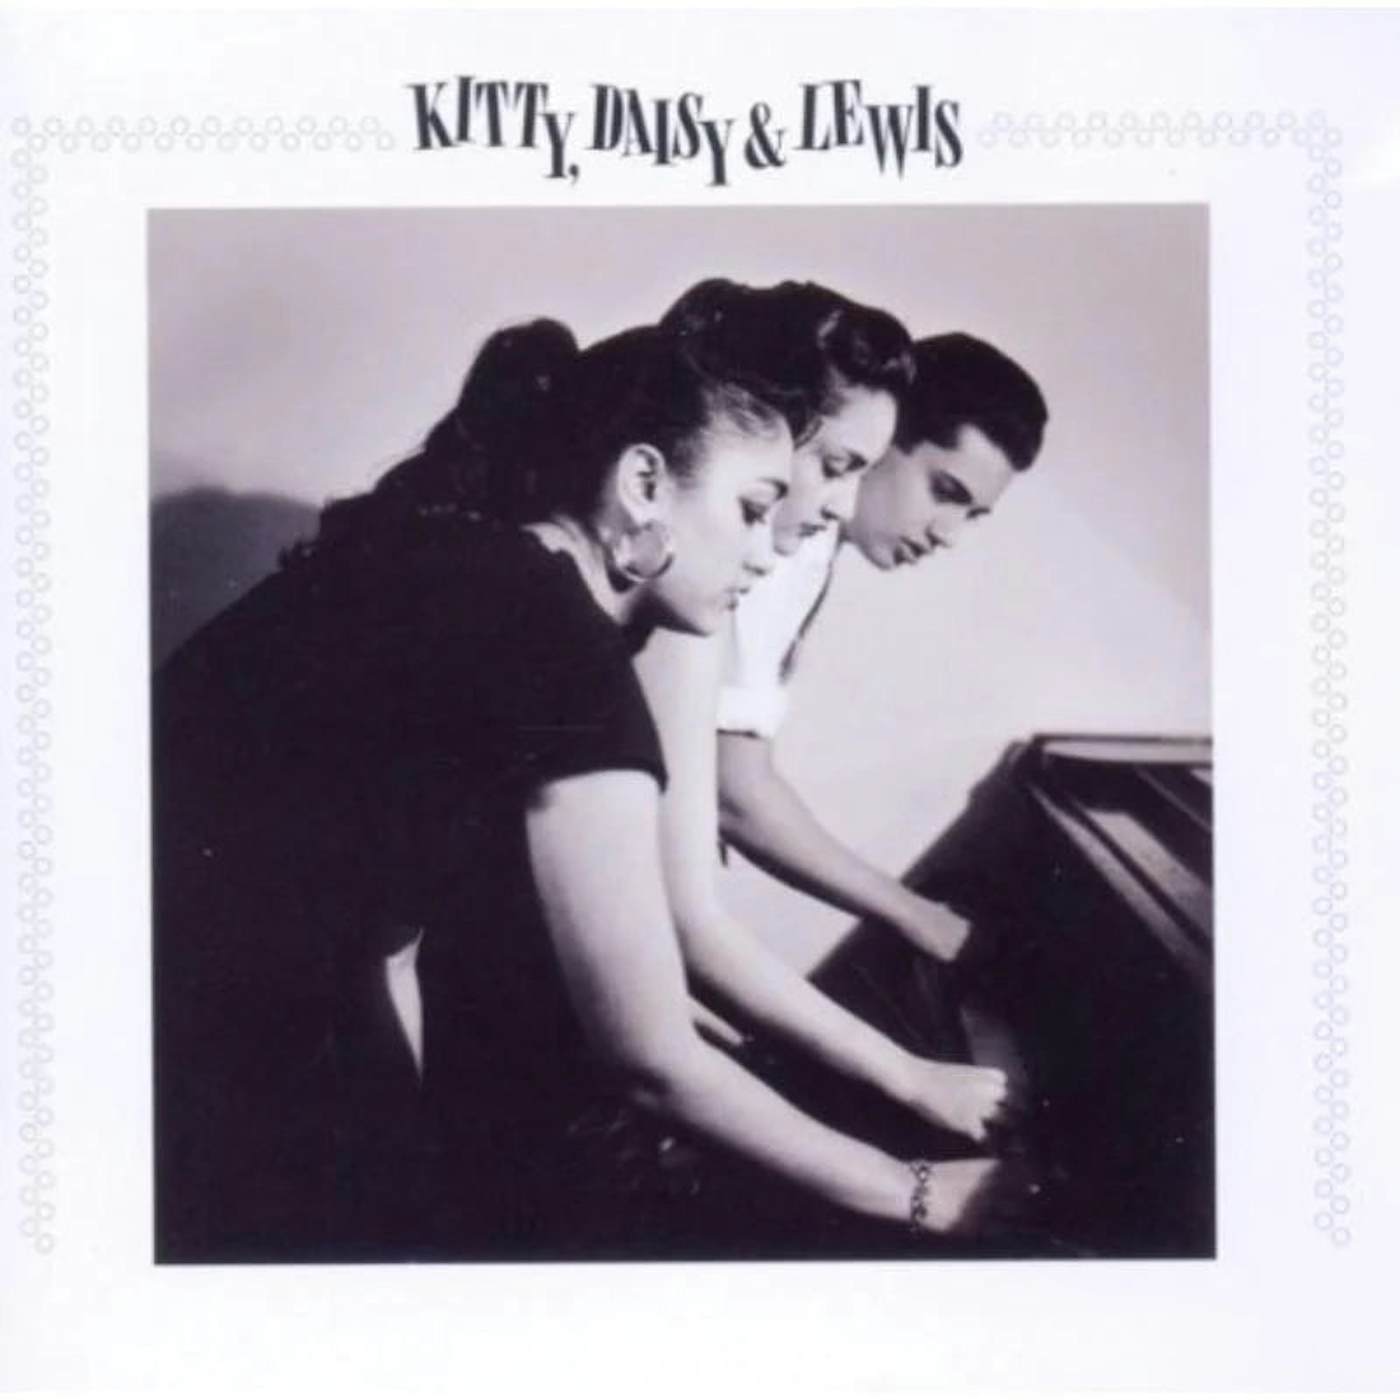 Kitty, Daisy & Lewis LP - Kitty Daisy & Lewis (Vinyl)